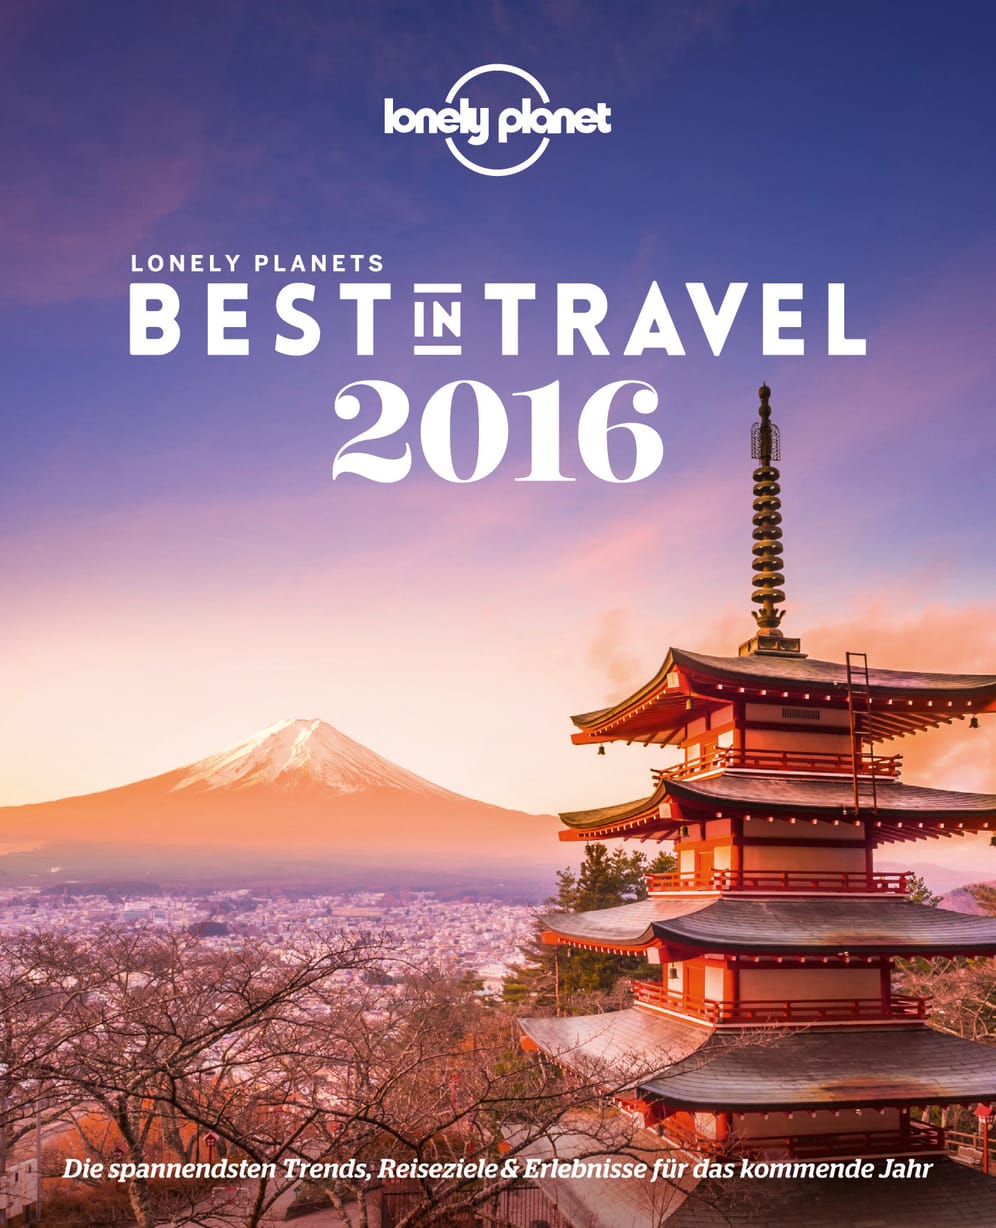 Der "Lonely Planet" macht in seinem Trend-Buch "Best in Travel 2016" wieder Vorschläge, welche Reiseziele kommendes Jahr angesagt sein sollen. Neben den besten Regionen kürt er die angesagtesten Reiseländer und -städte.